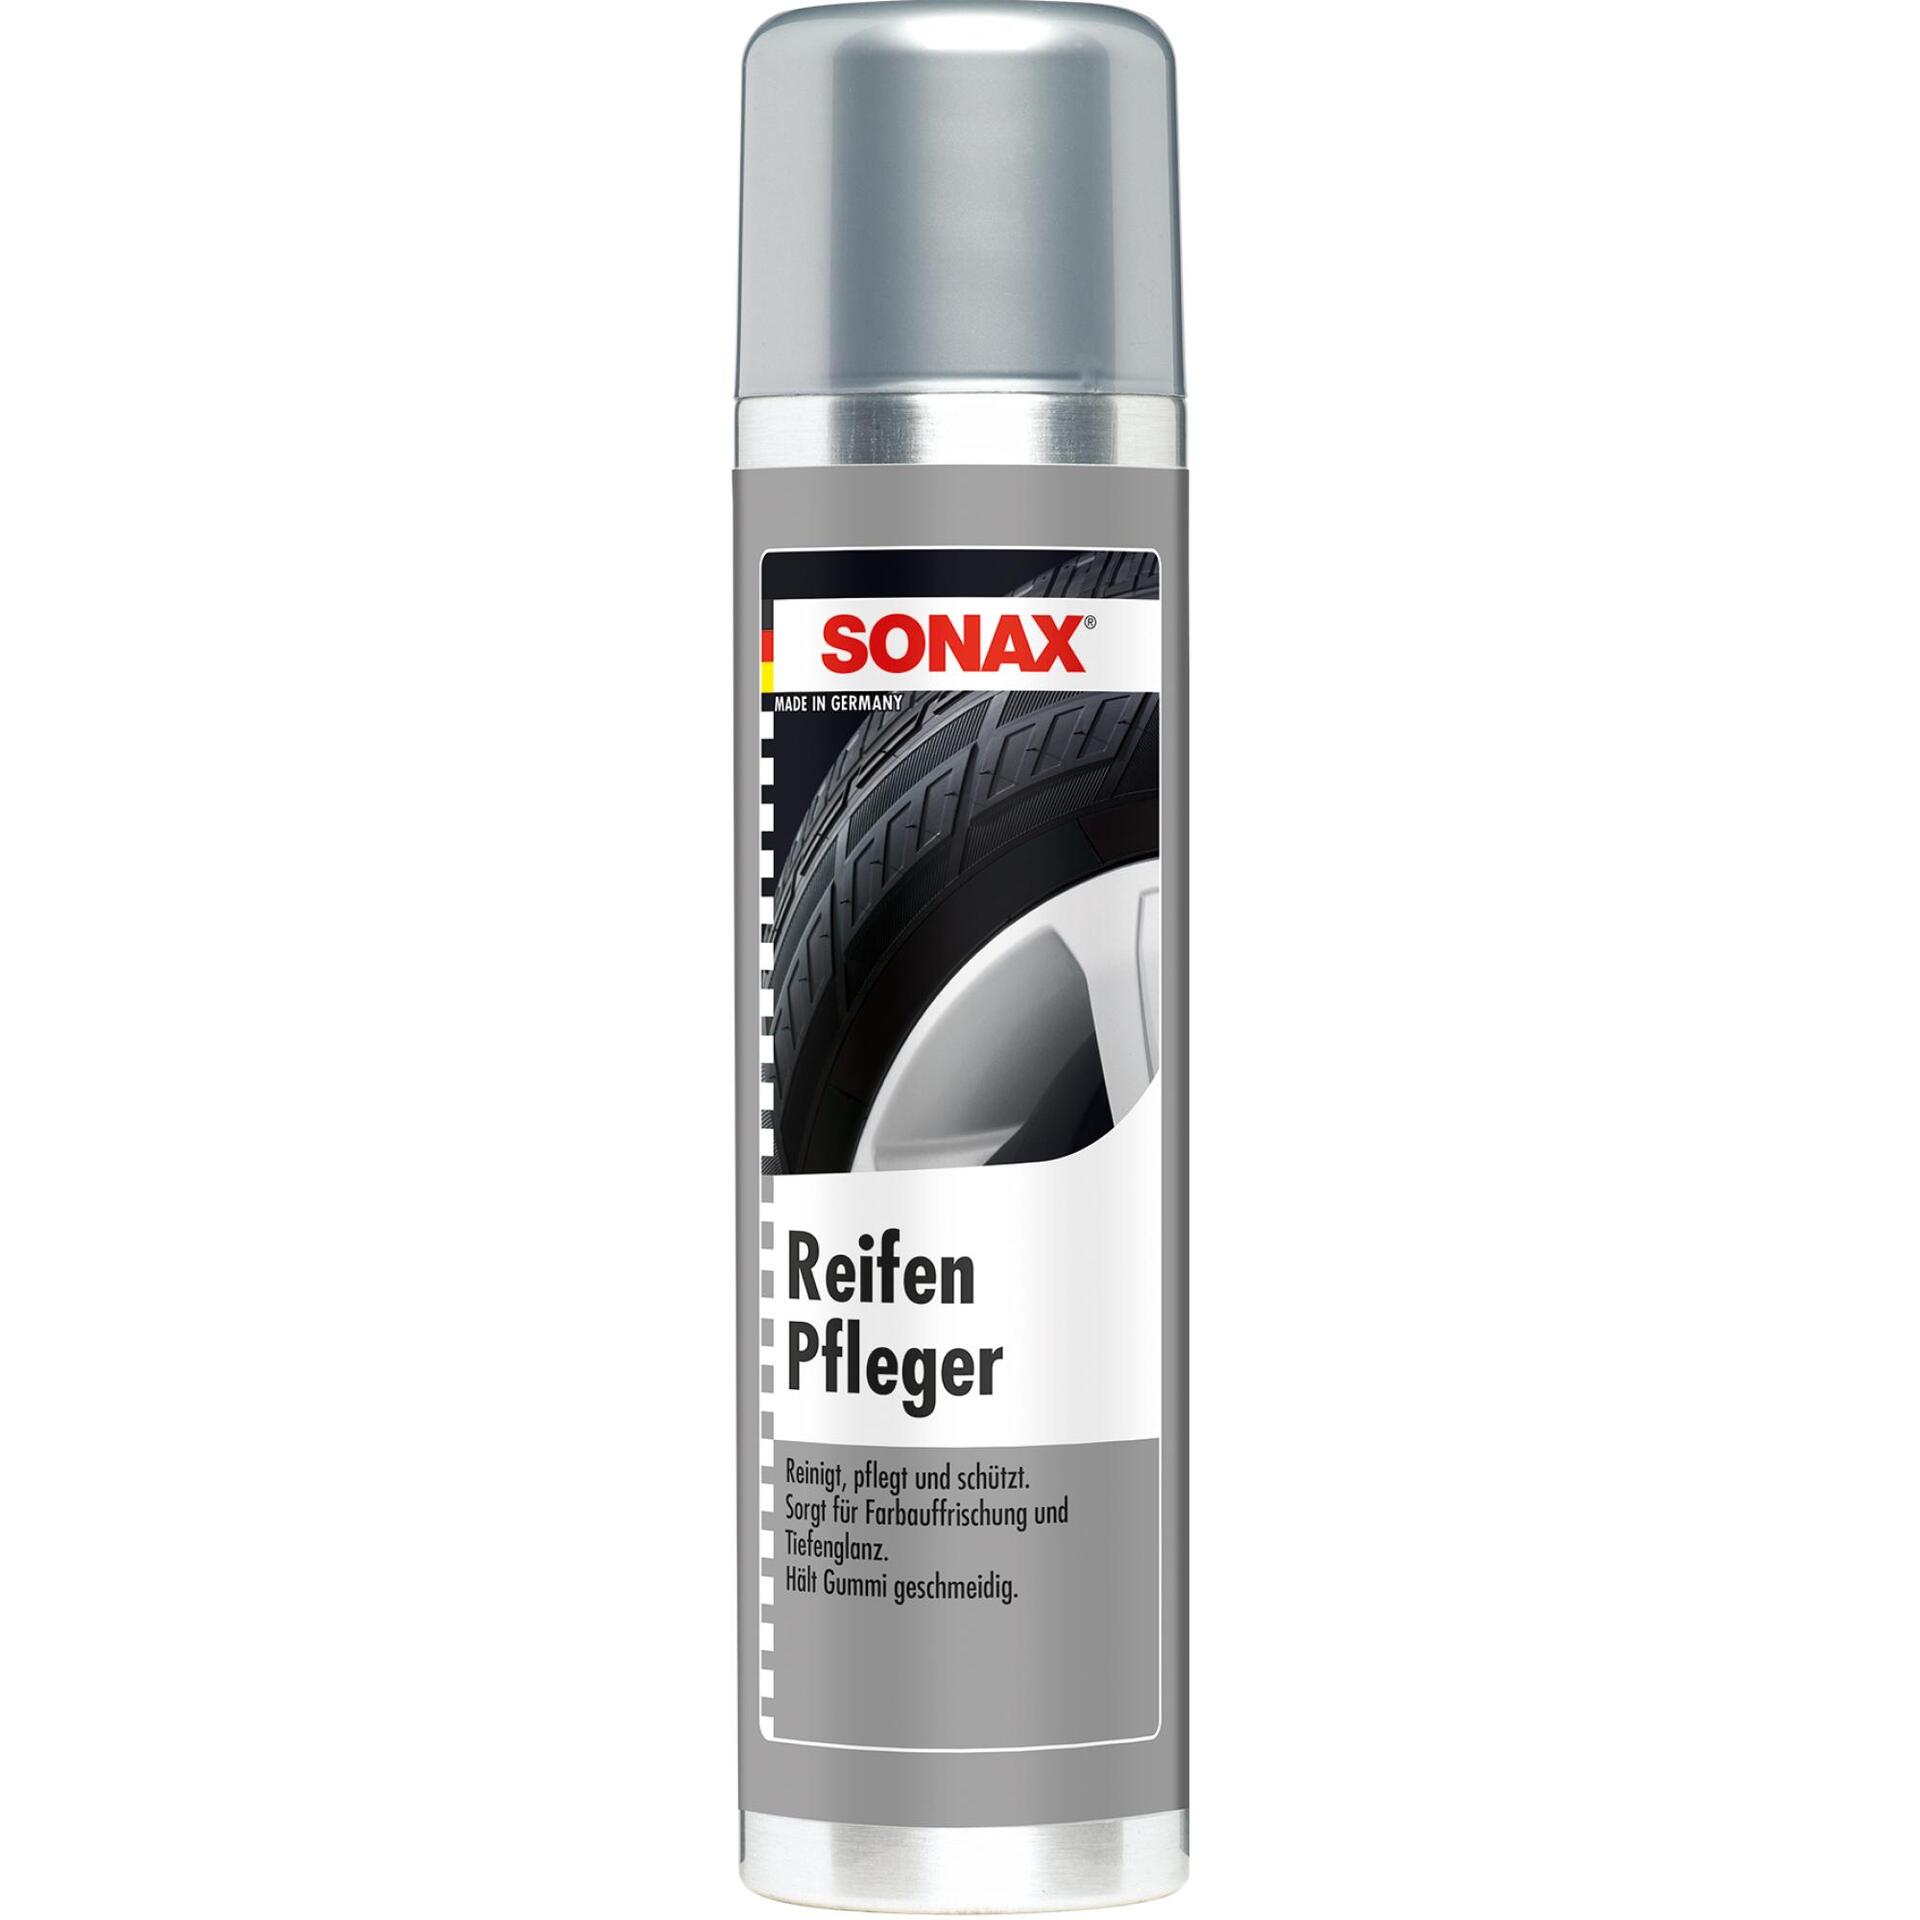 SONAX Reifen-Pflege 400ml